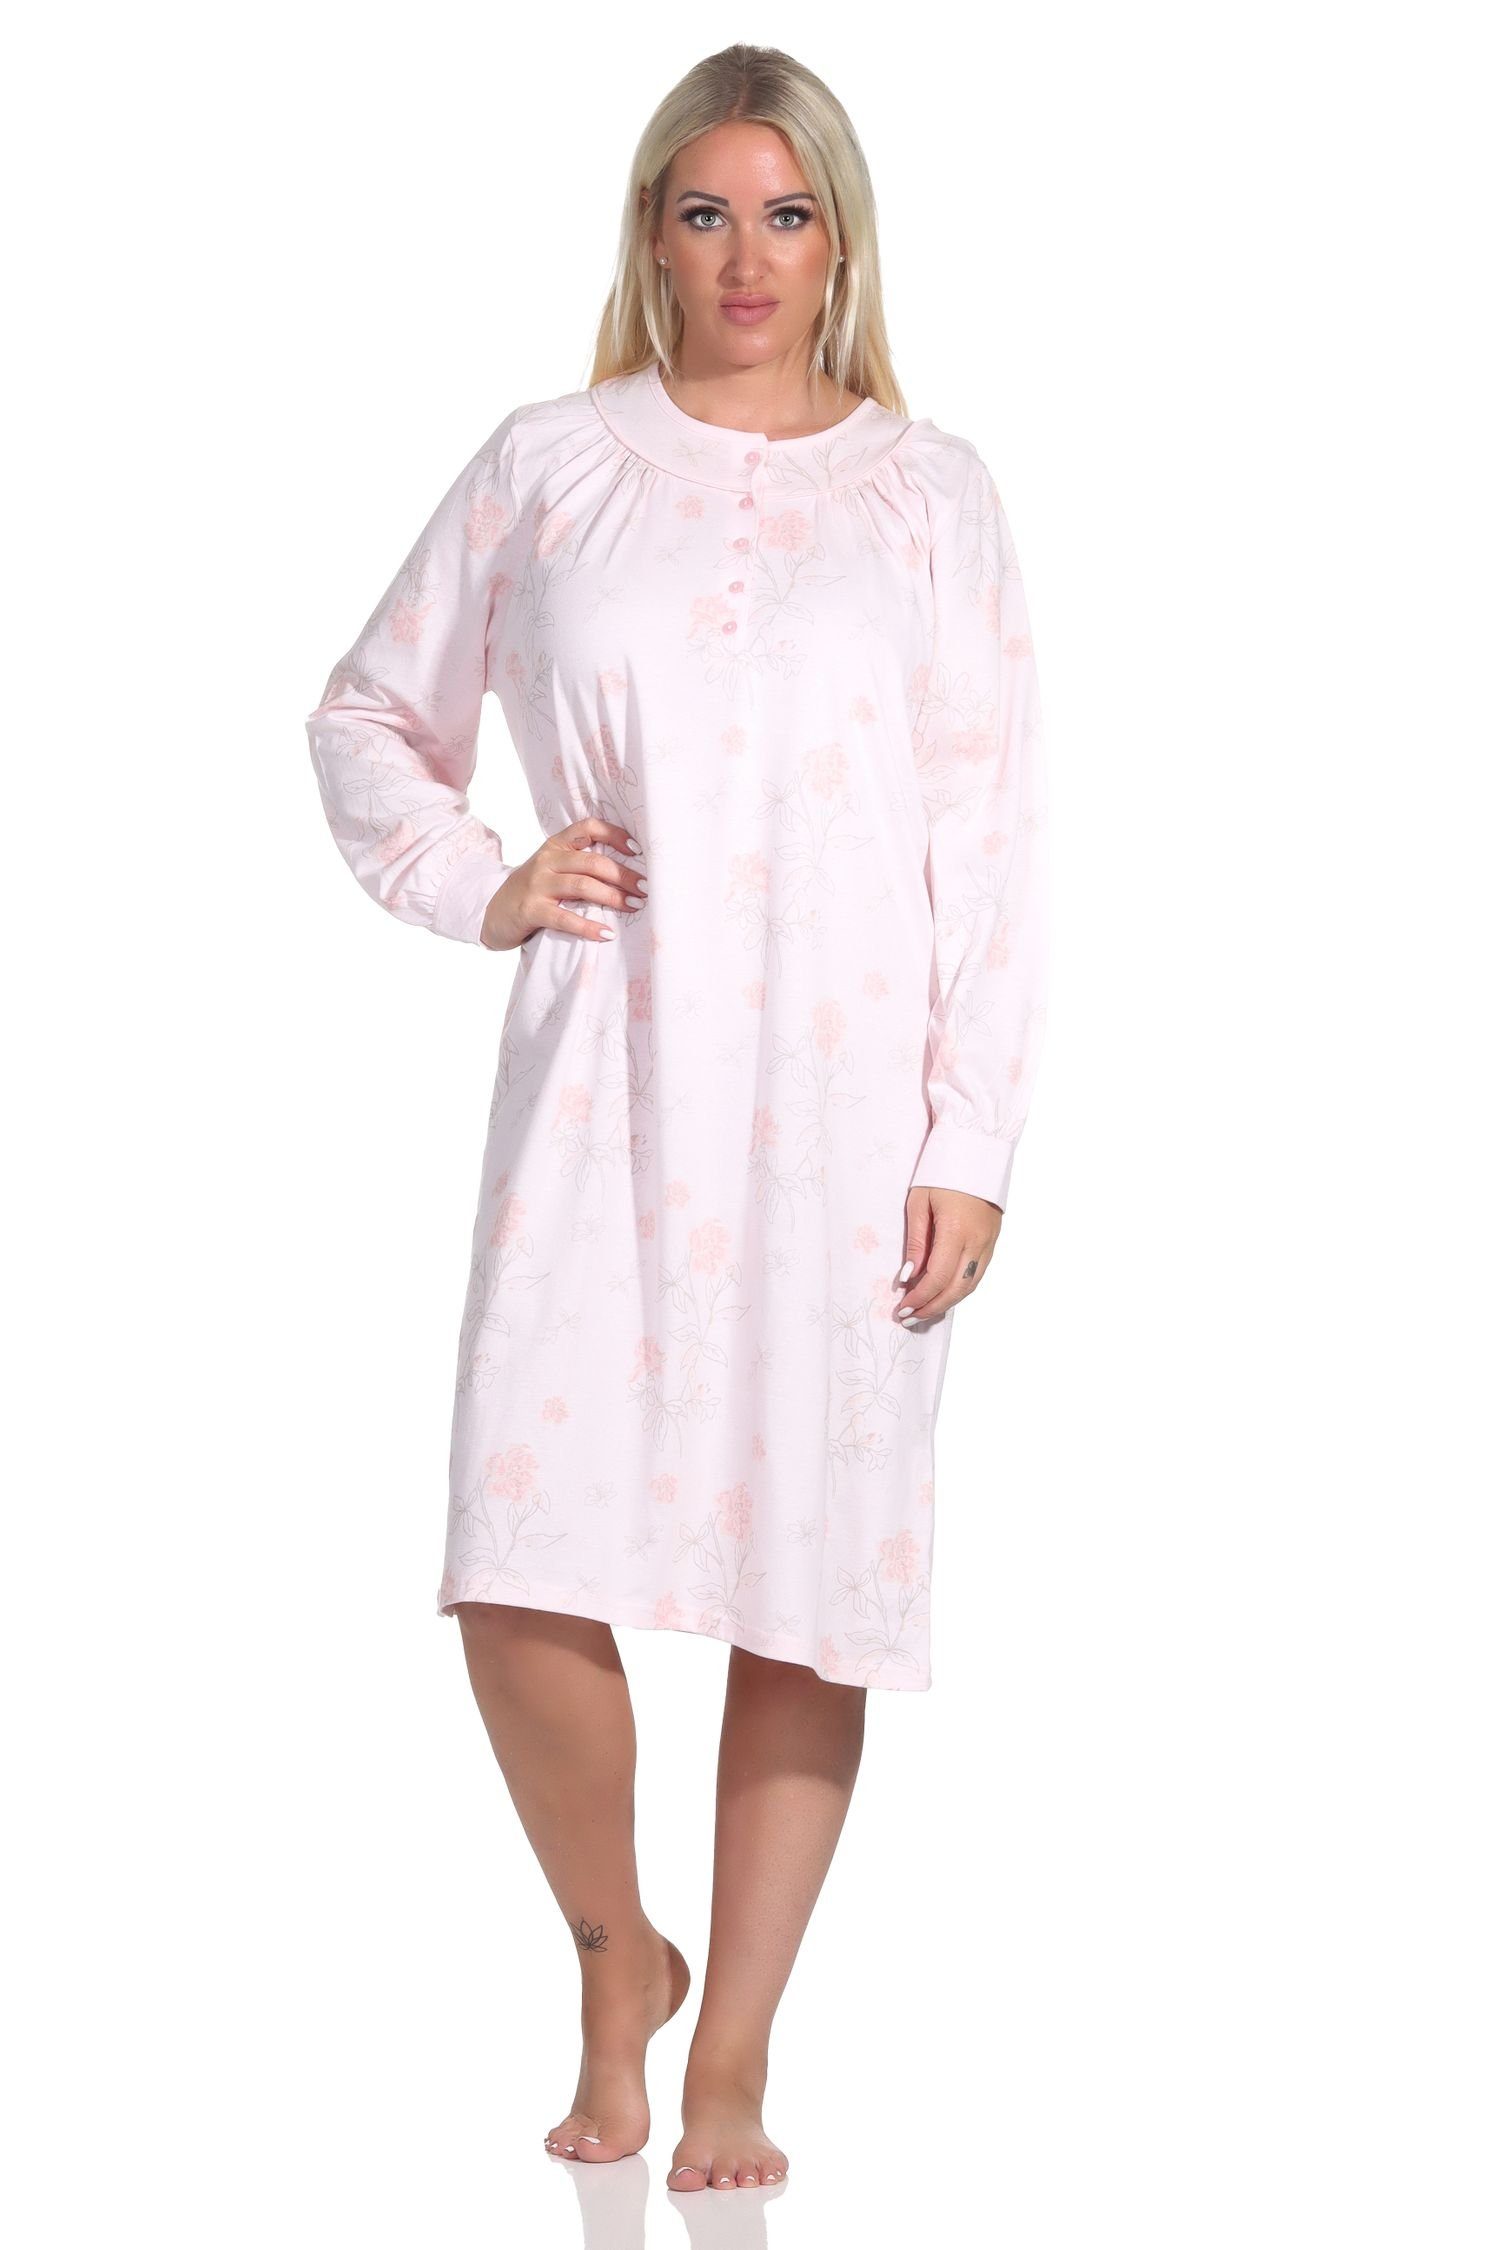 Normann Nachthemd Damen Nachthemd langarm in fraulicher Optik mit Knopfleiste am Hals rosa